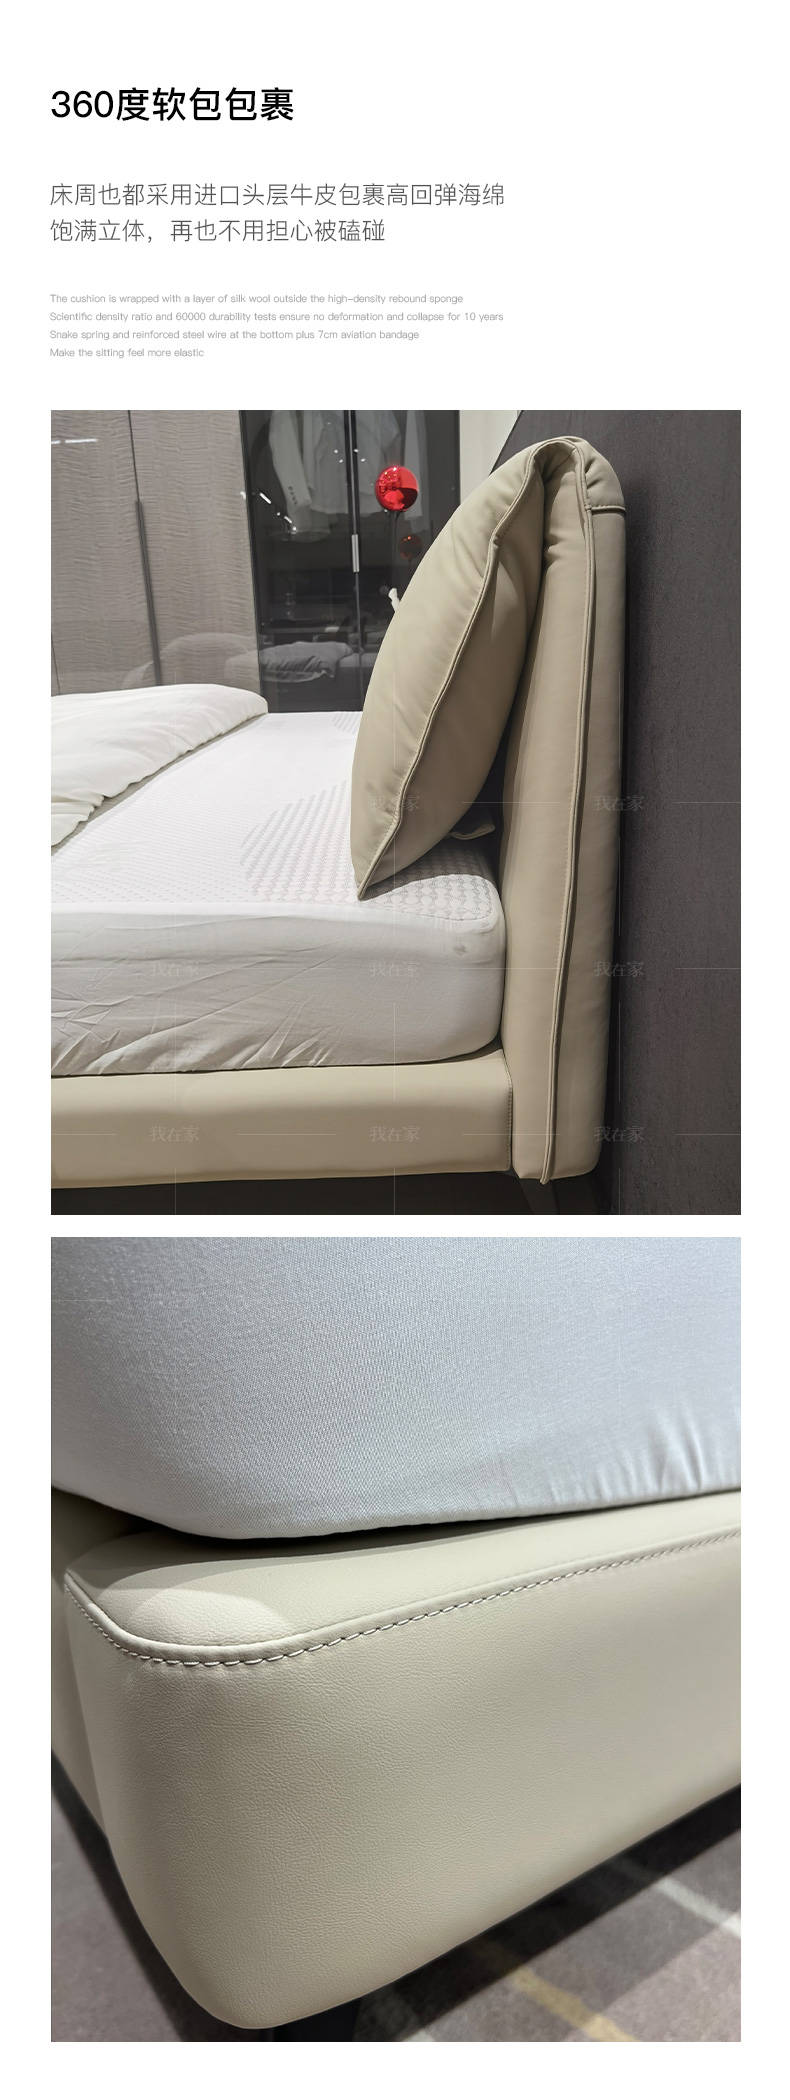 意式极简风格小耳朵齐边双人床的家具详细介绍